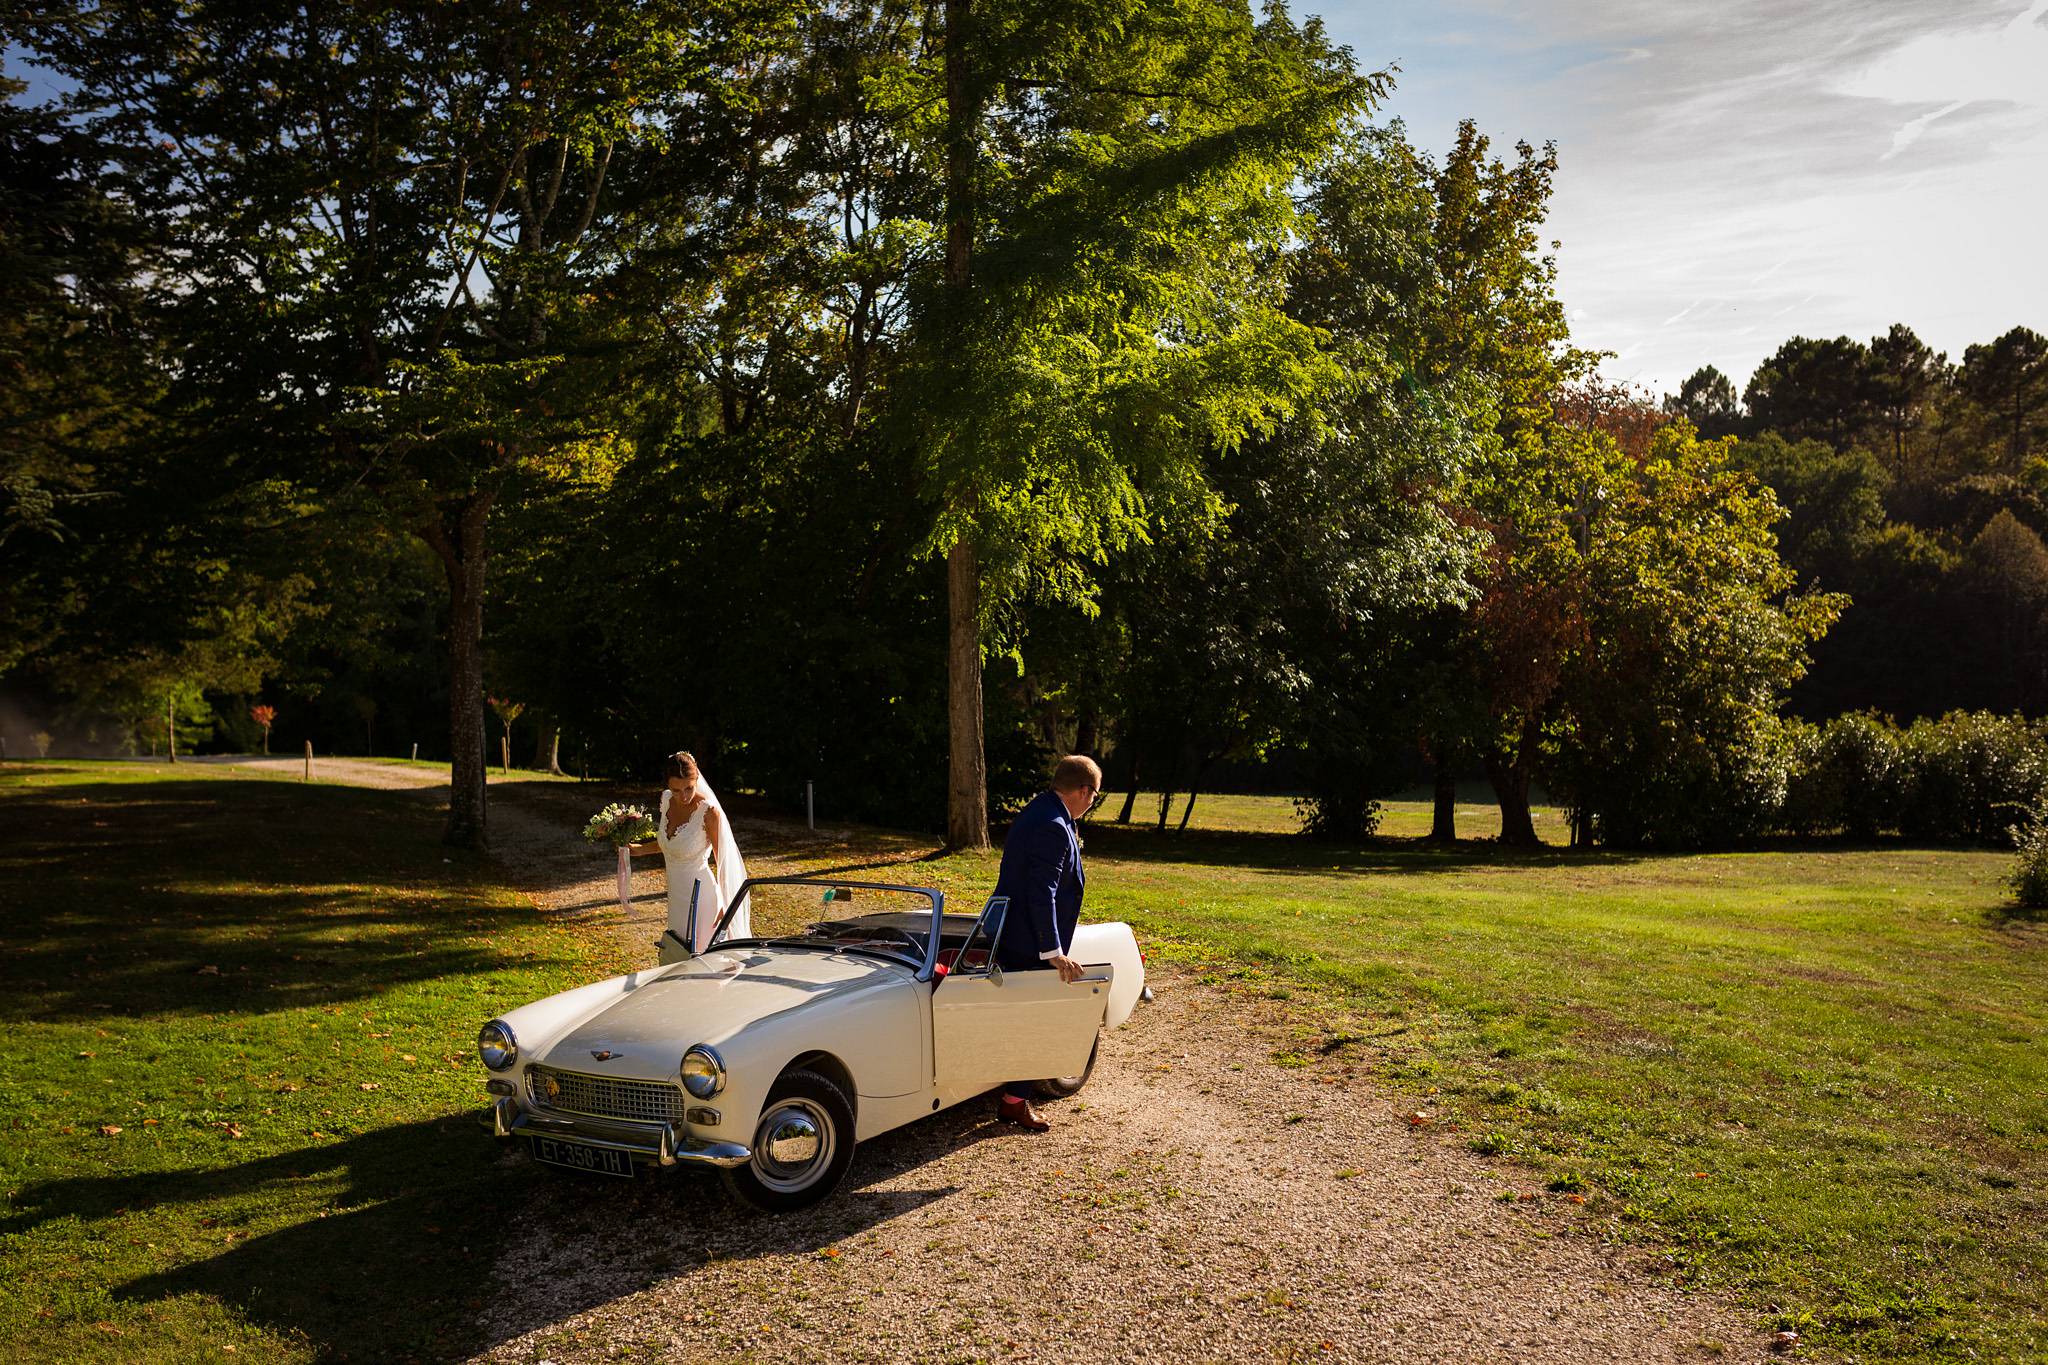 Les photos du mariage religieux d'Alice et François-Maxime au Domaine de La Fauconnie en Dordogne. Un mariage classe, DIY dans un lieu magique.